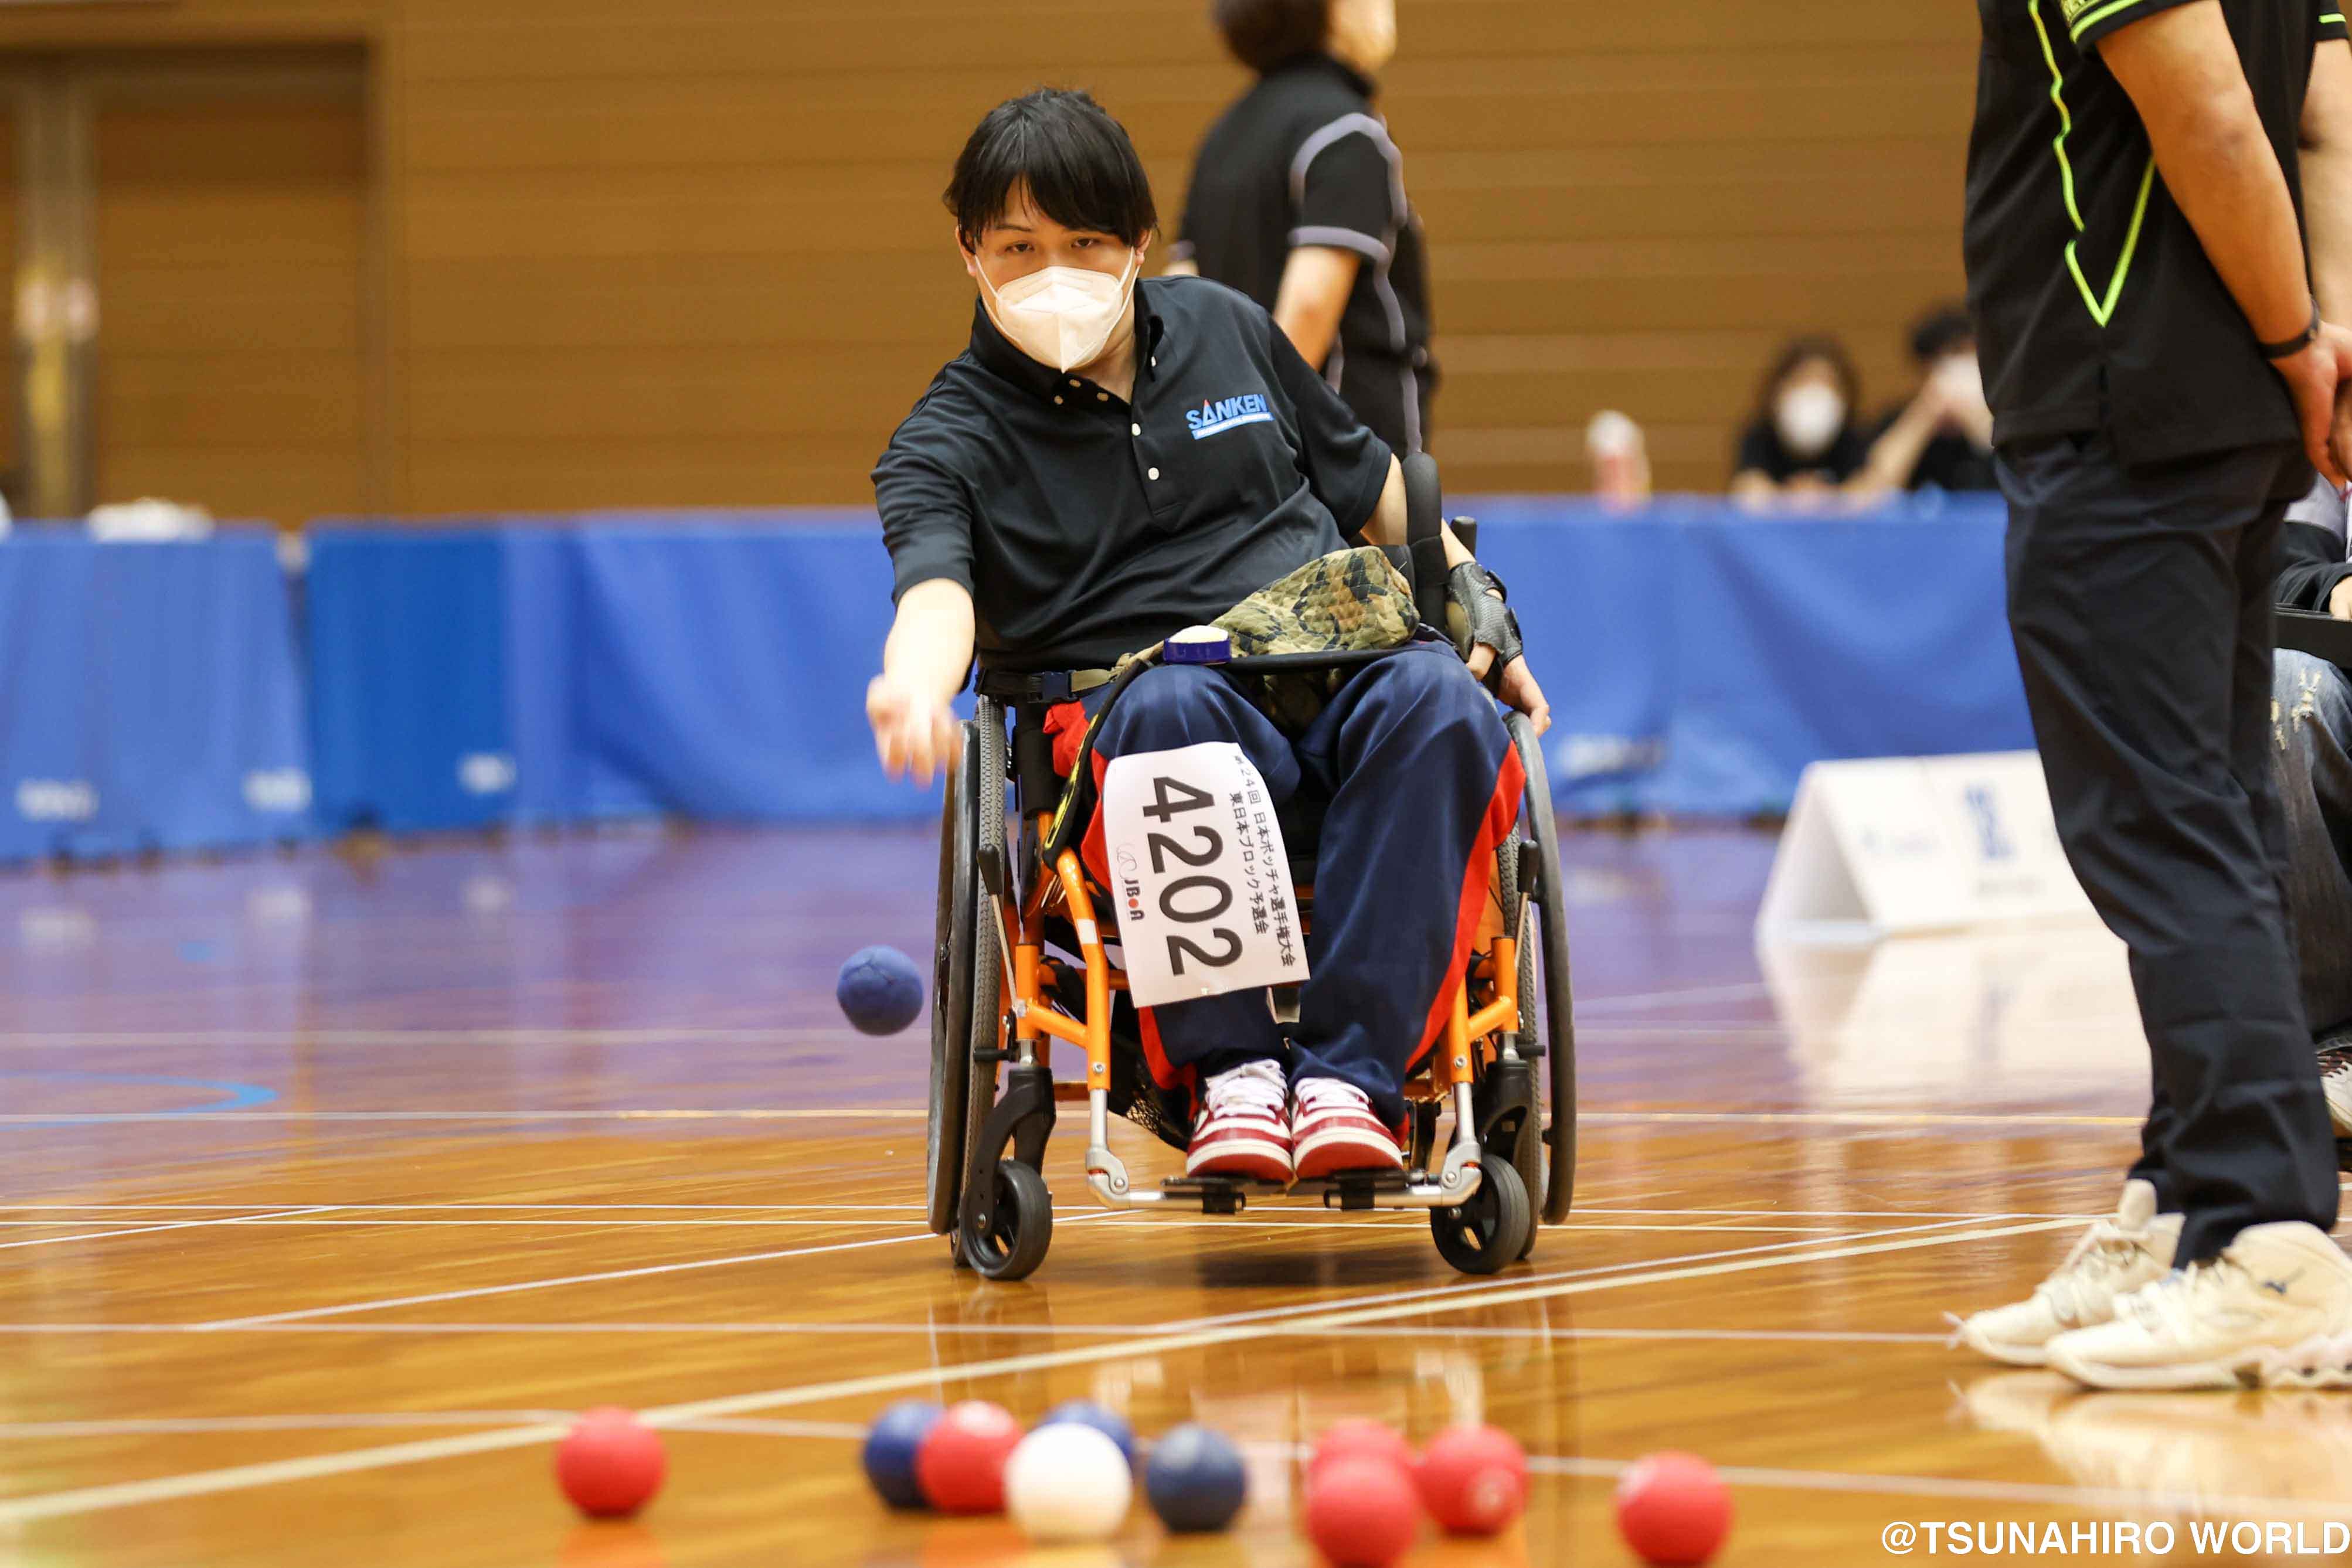 藤井金太郎/ボッチャ | 障害者アスリートのための求人・就職・雇用支援（株）つなひろワールド